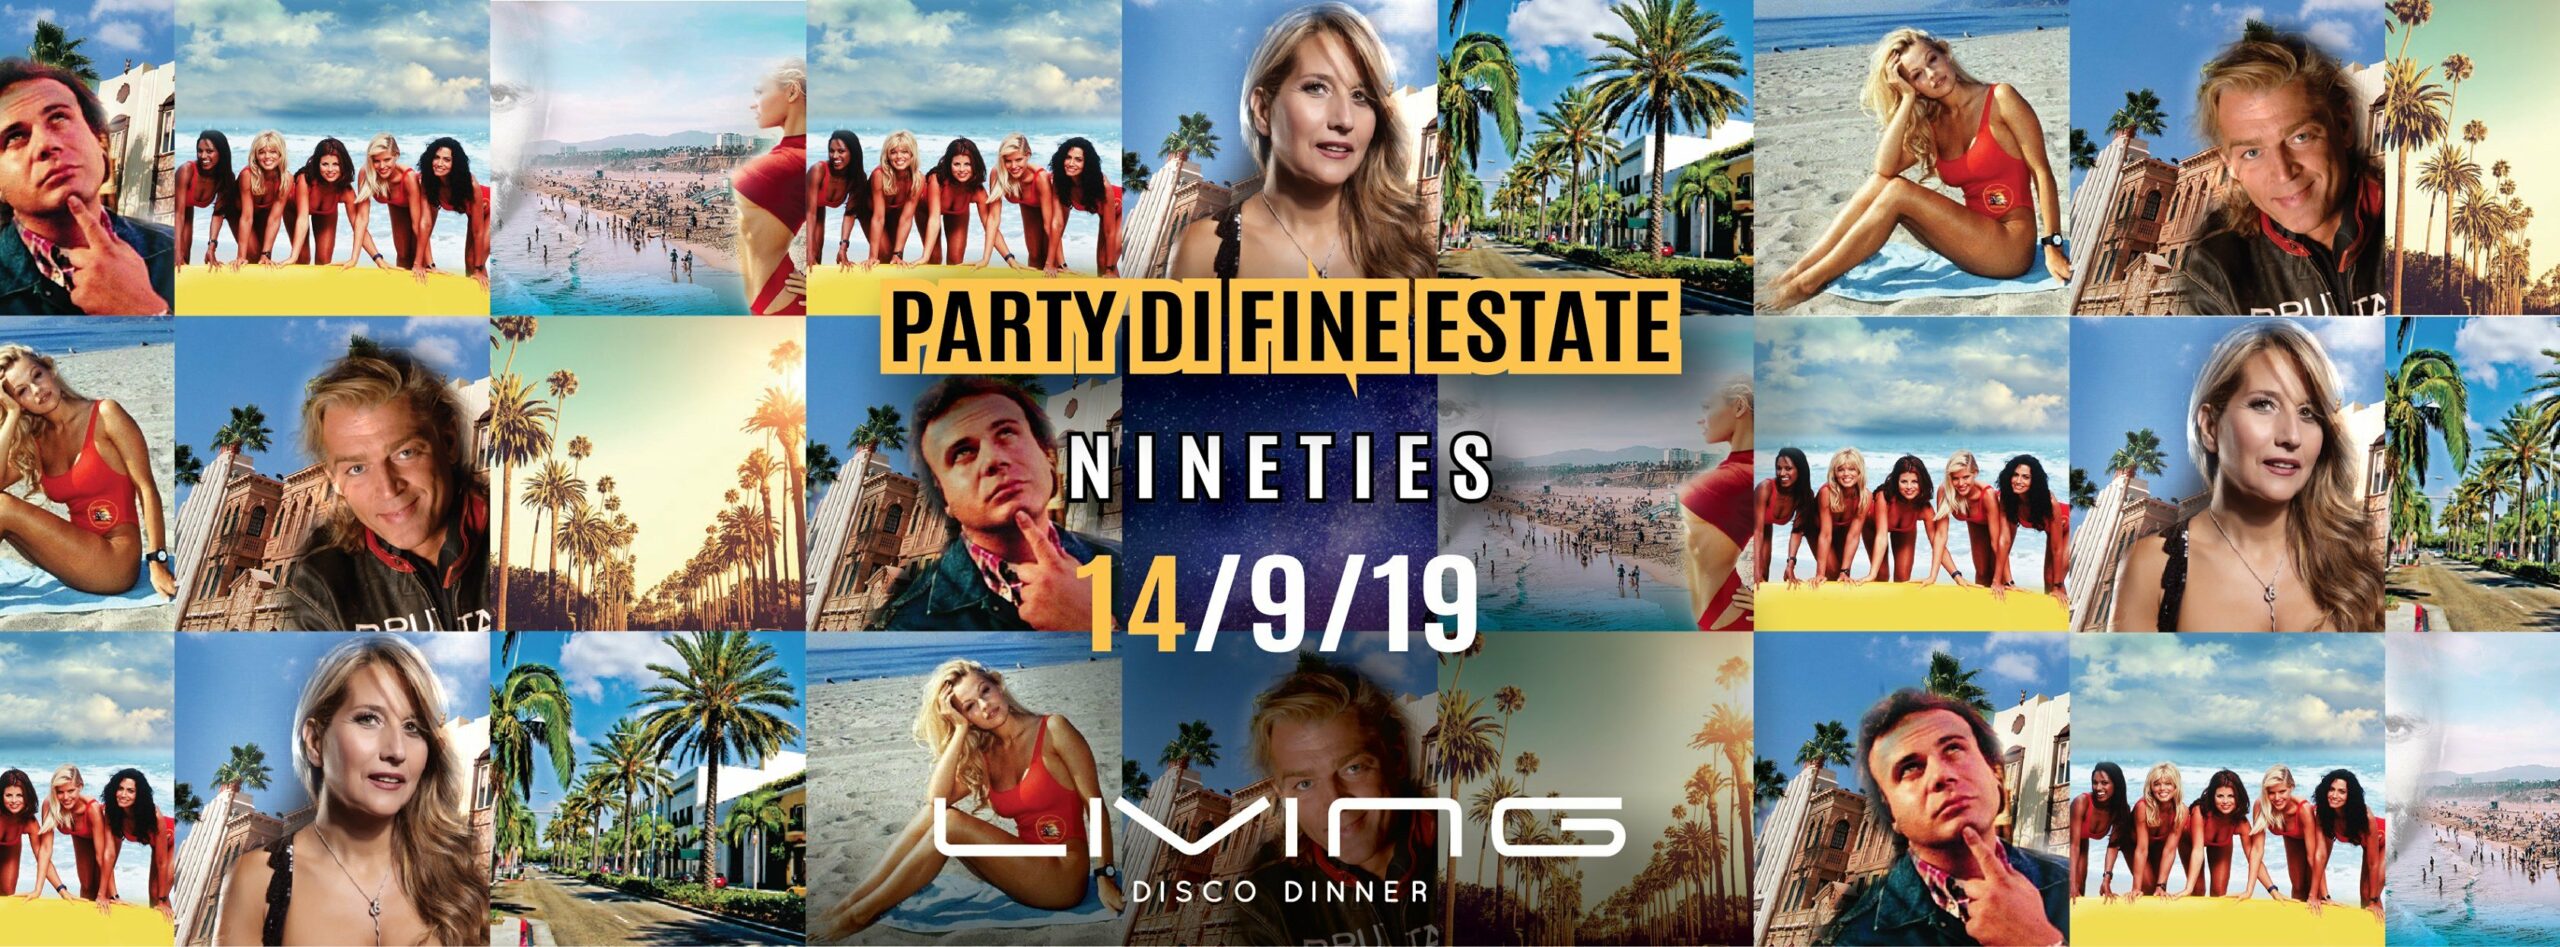 Party di fine estate 2019 Living Misano Adriatico